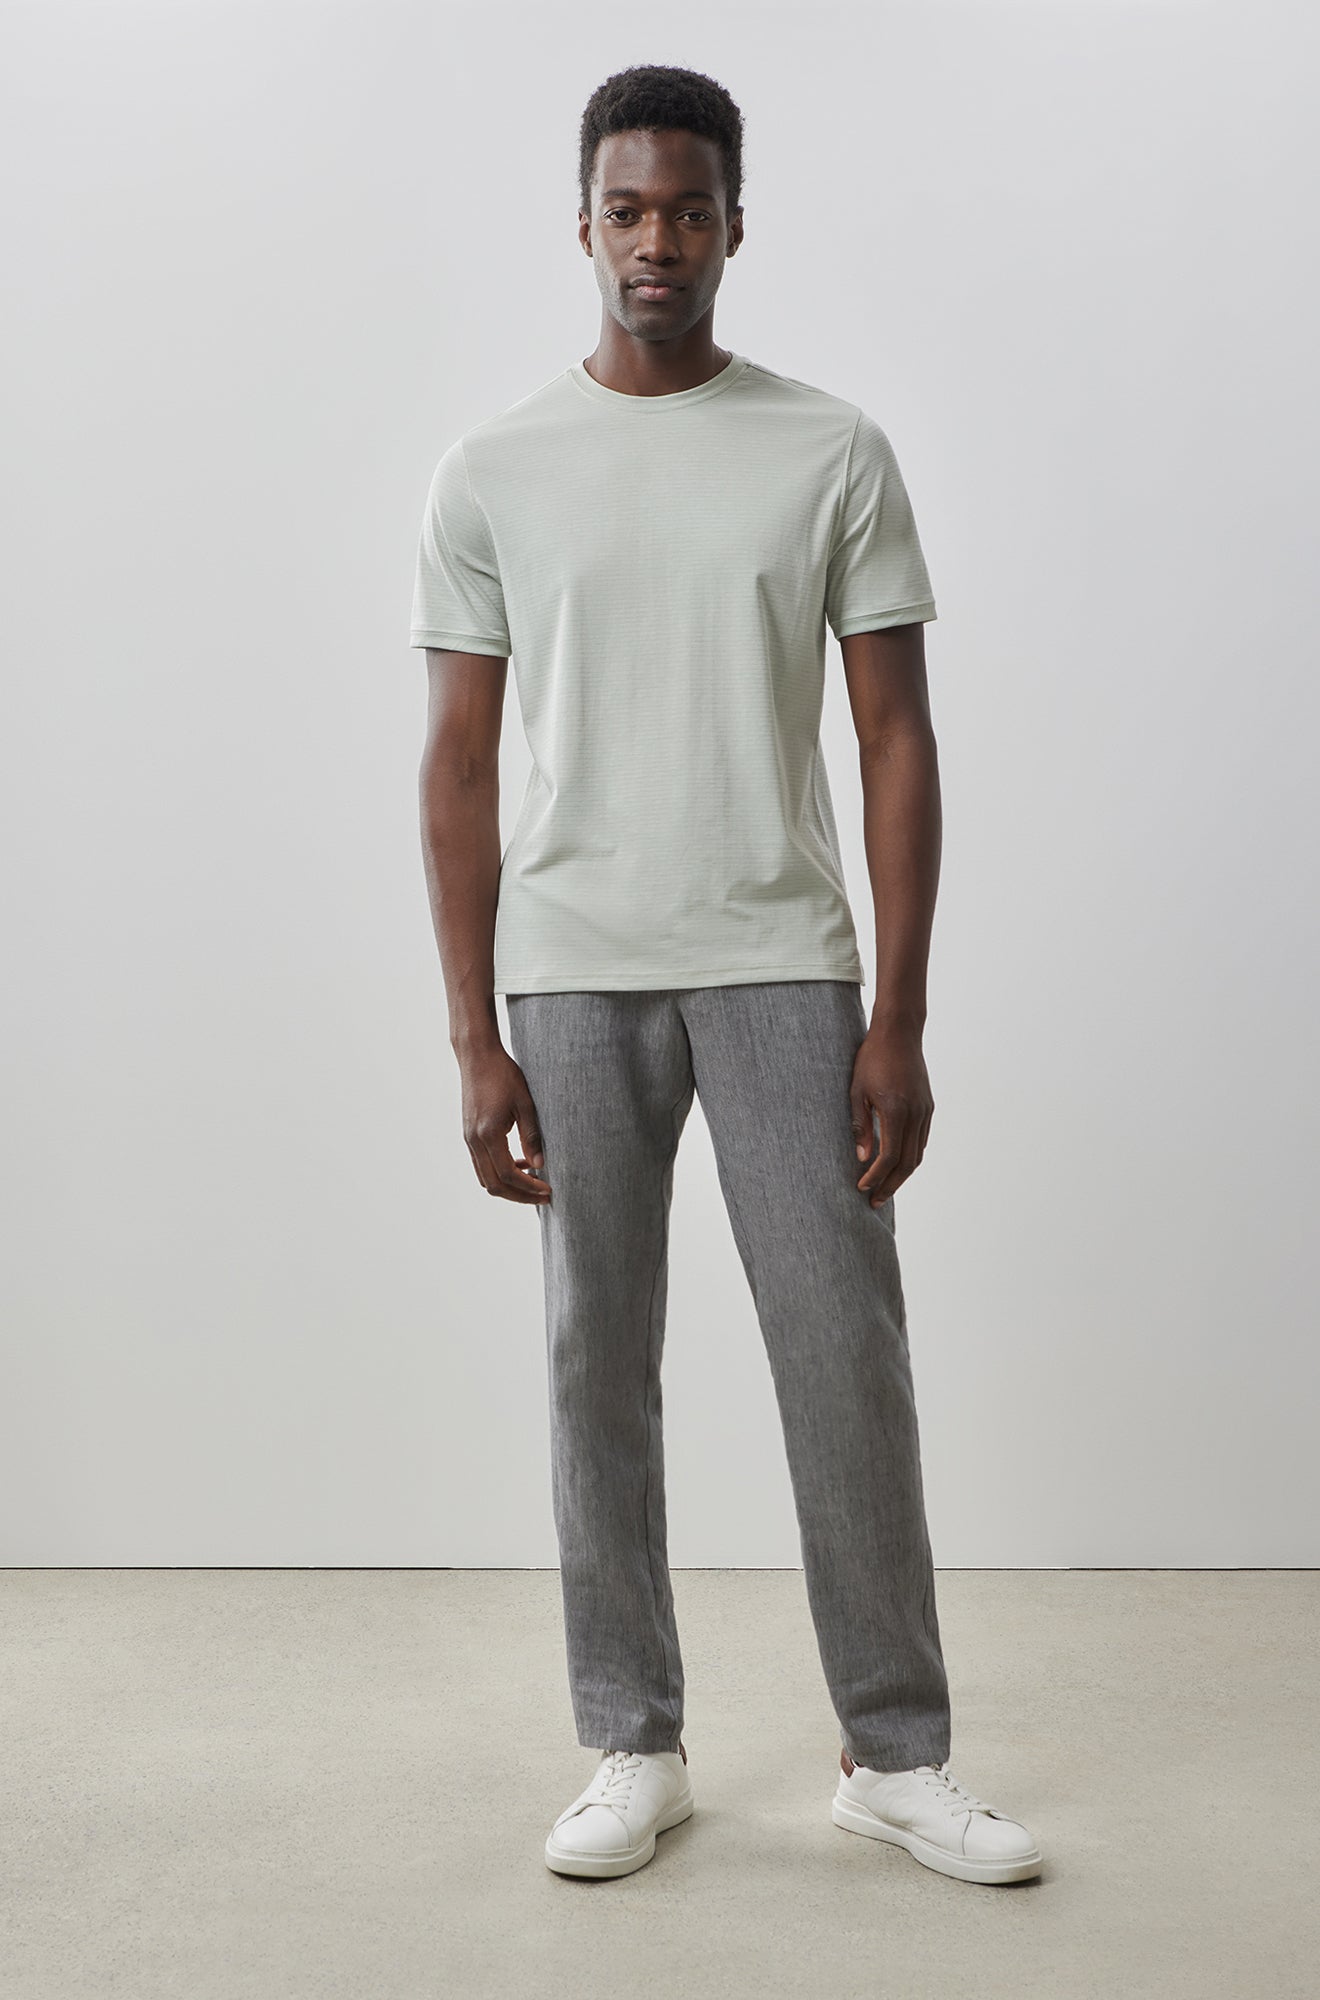 T-Shirt en Knit pour homme par Robert Barakett | Forester RB41068 GREEN | Machemise.ca, vêtements mode pour hommes